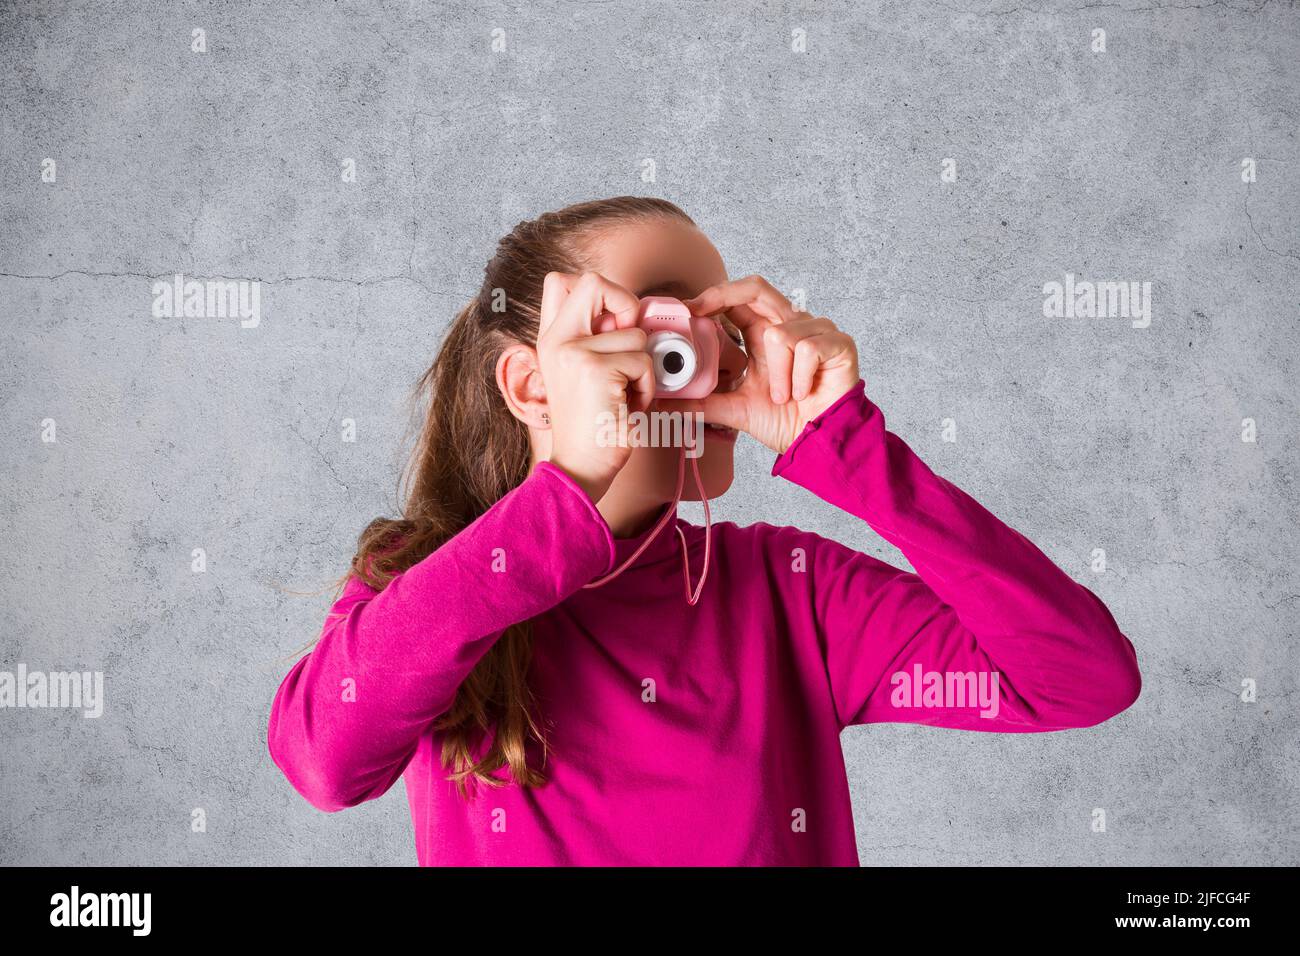 Little Girl está tomando una fotografía con la cámara de fotos de juguete sobre fondo gris Foto de stock